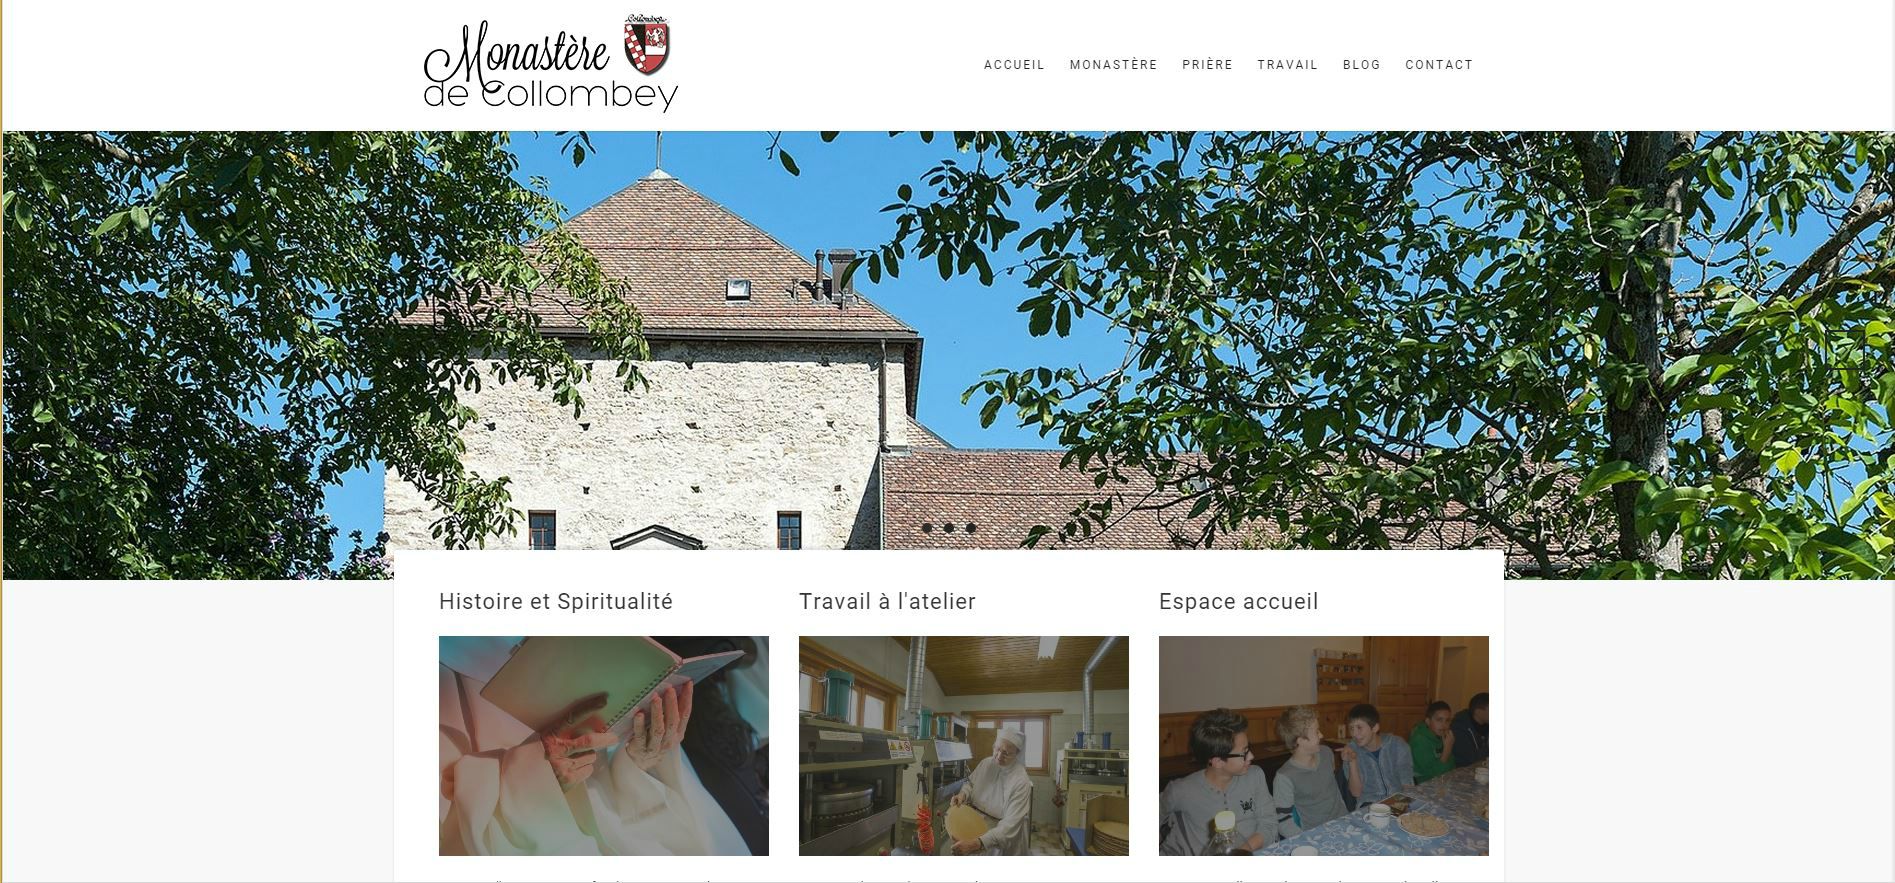 La page d'accueil du site internet du monastère des Bernardines. (Photo: capture écran)